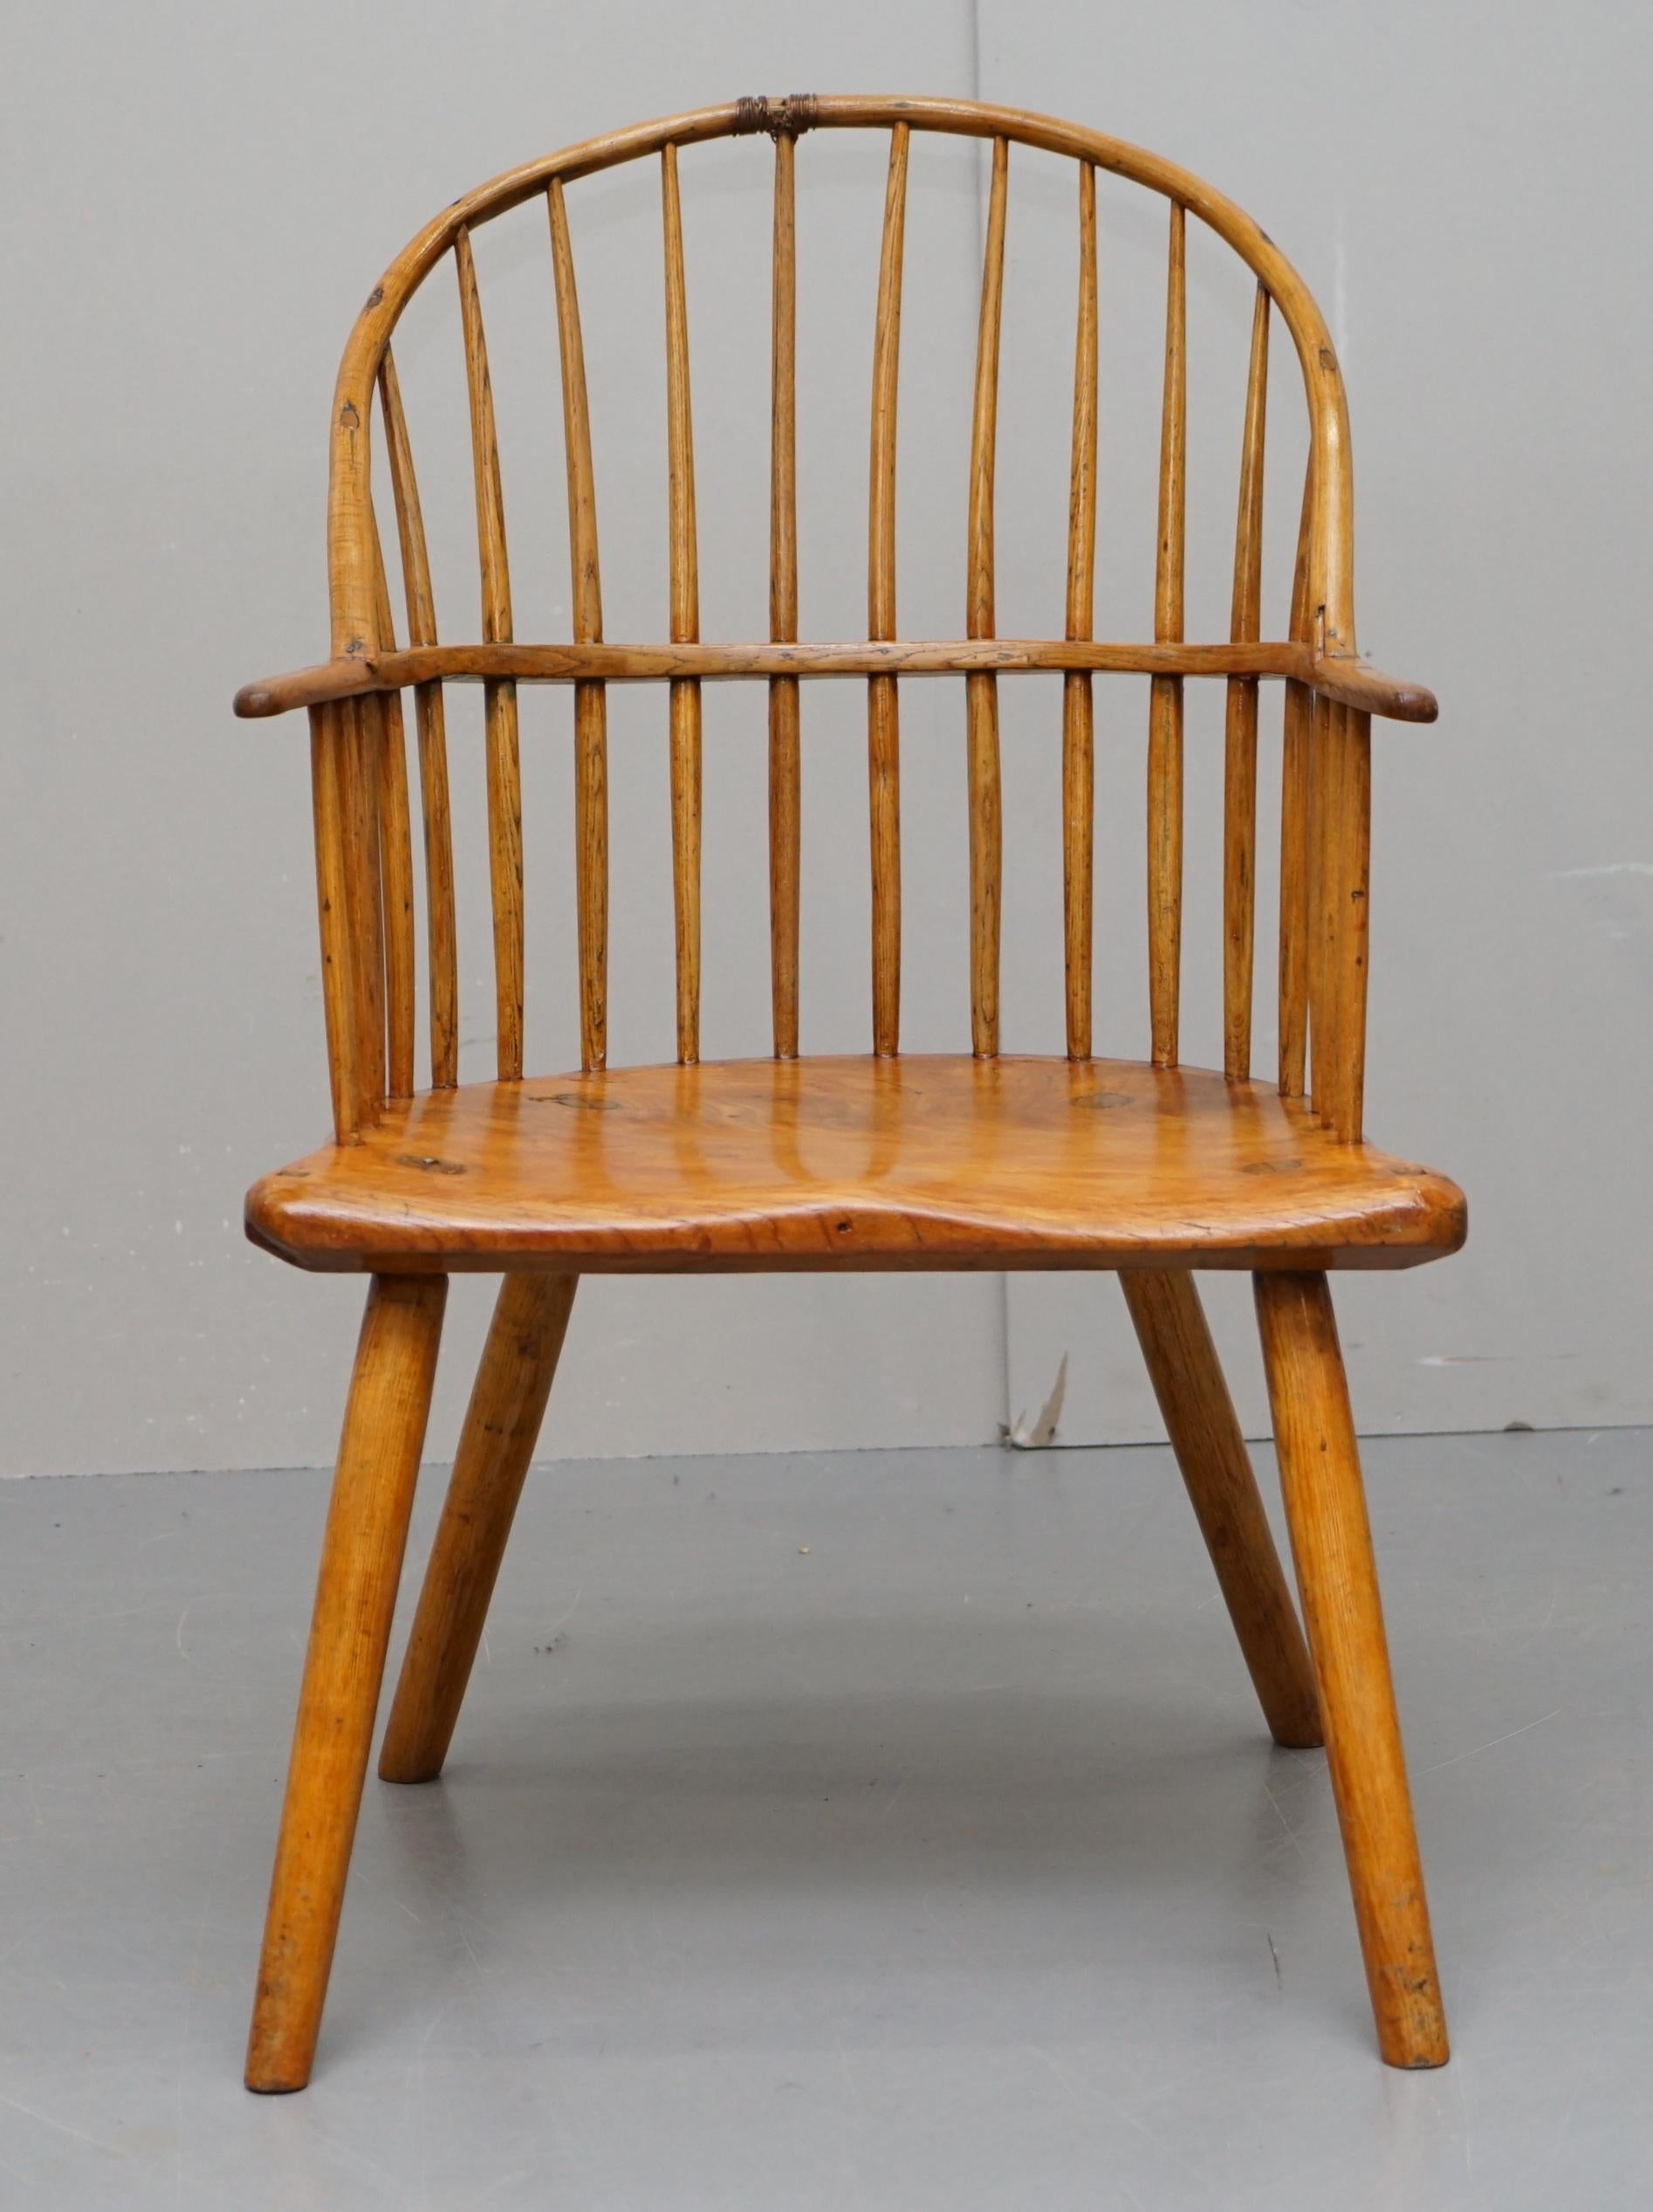 Wir freuen uns, diesen absolut erhabenen Windsor-Sessel aus massivem Eibenholz aus der Mitte des 18. Jahrhunderts (ca. 1760) zum Verkauf anbieten zu können.

Wenn Sie sich dieses Angebot ansehen, dann wissen Sie wahrscheinlich, um was es sich bei